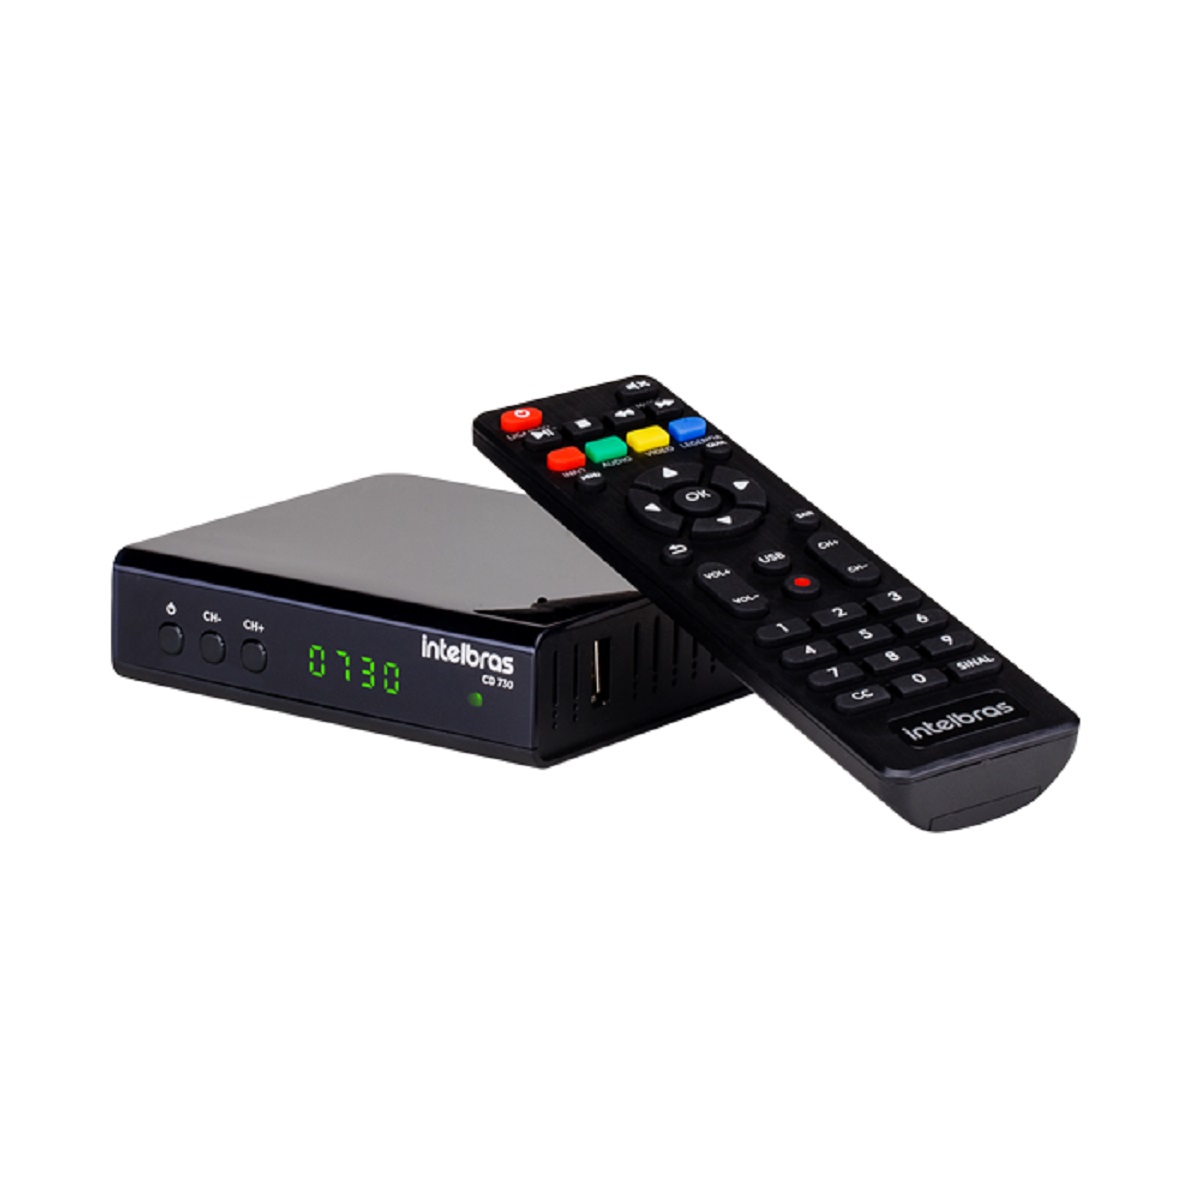 CD 730 - Conversor e gravador digital HDTV